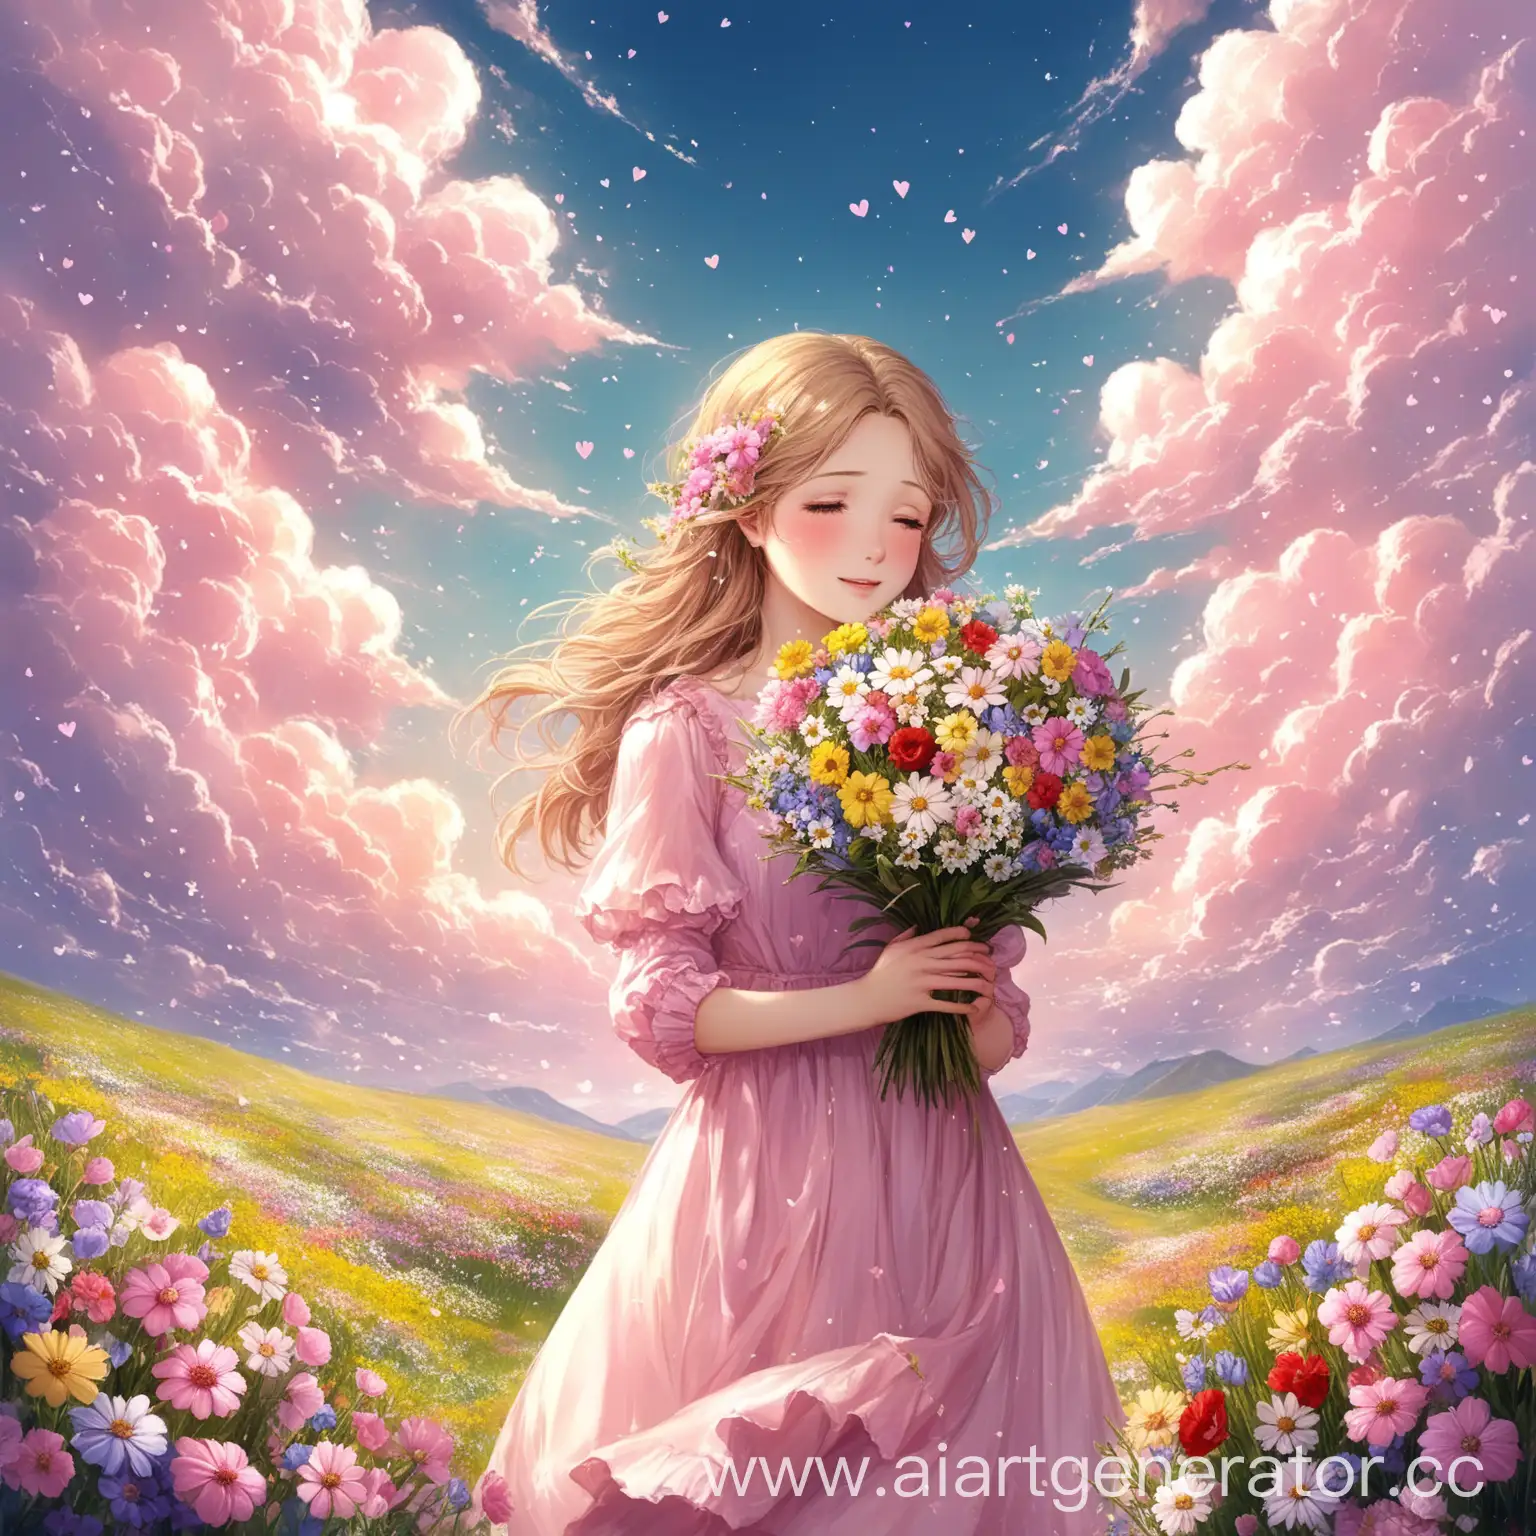 Я приду, когда зацветёт весна
И покрасит в розовый собой облака
Соберу букет полевых цветов
И спрячу
И моё сердечко болит от любви
Просто слушай, ничего мне не говори
Первое свиданье последней весны
Я плачу